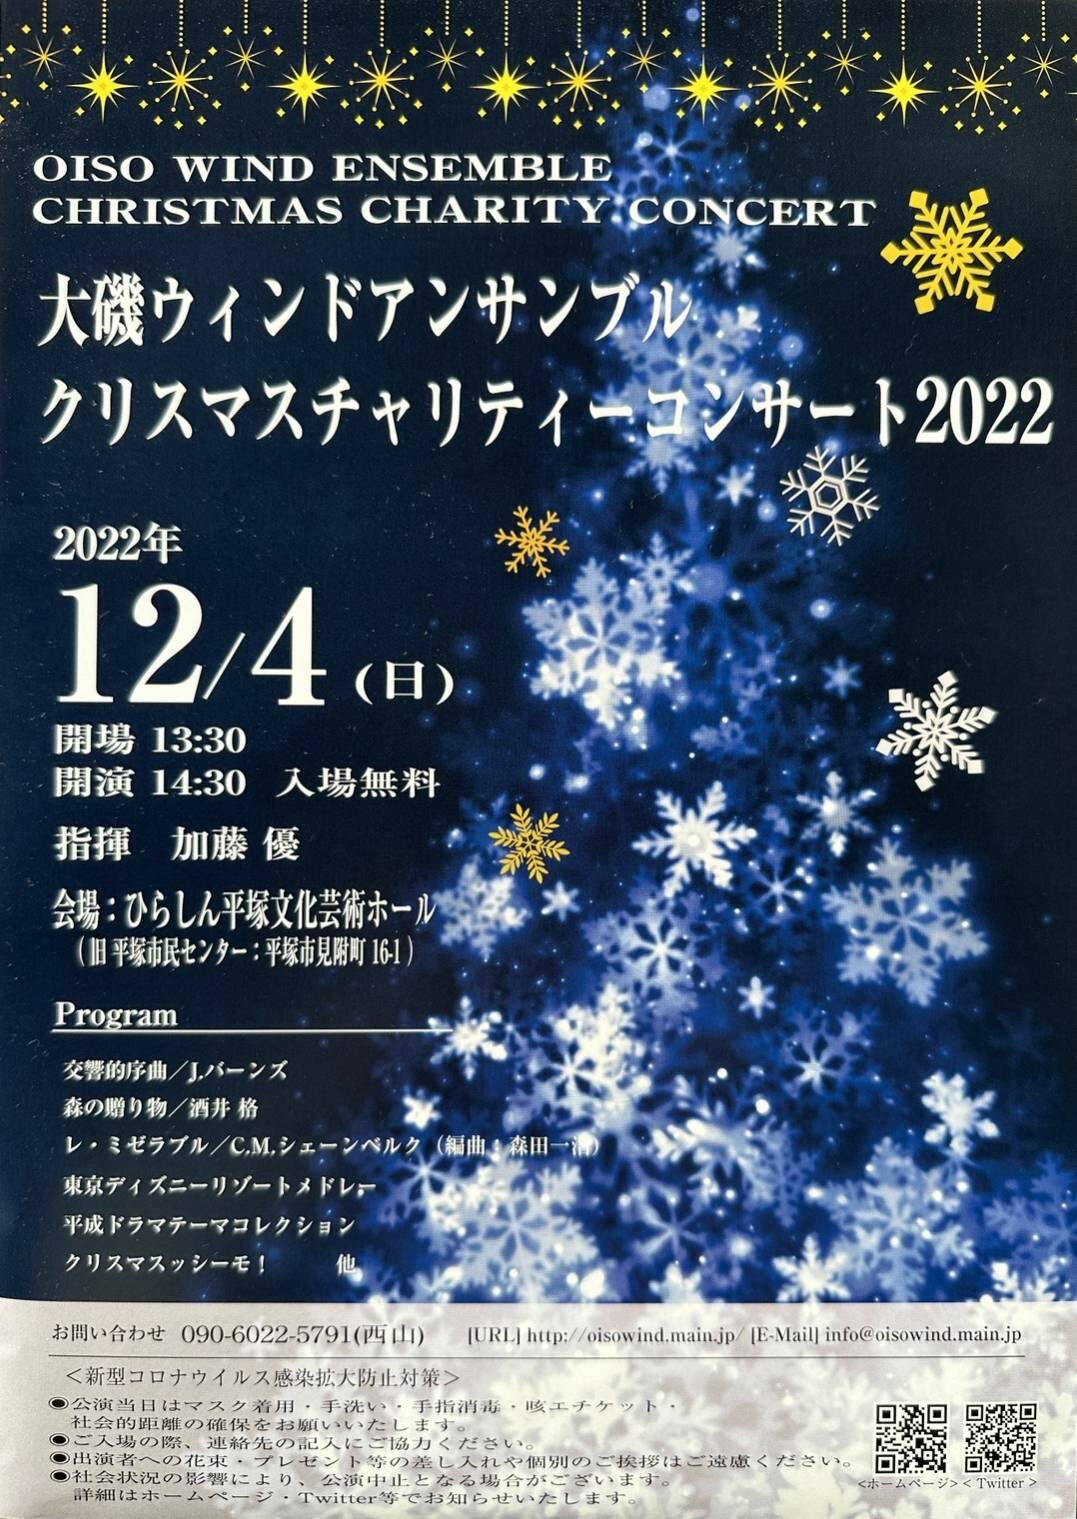 『大磯ウィンドアンサンブル』クリスマスチャリティーコンサート2022チラシ